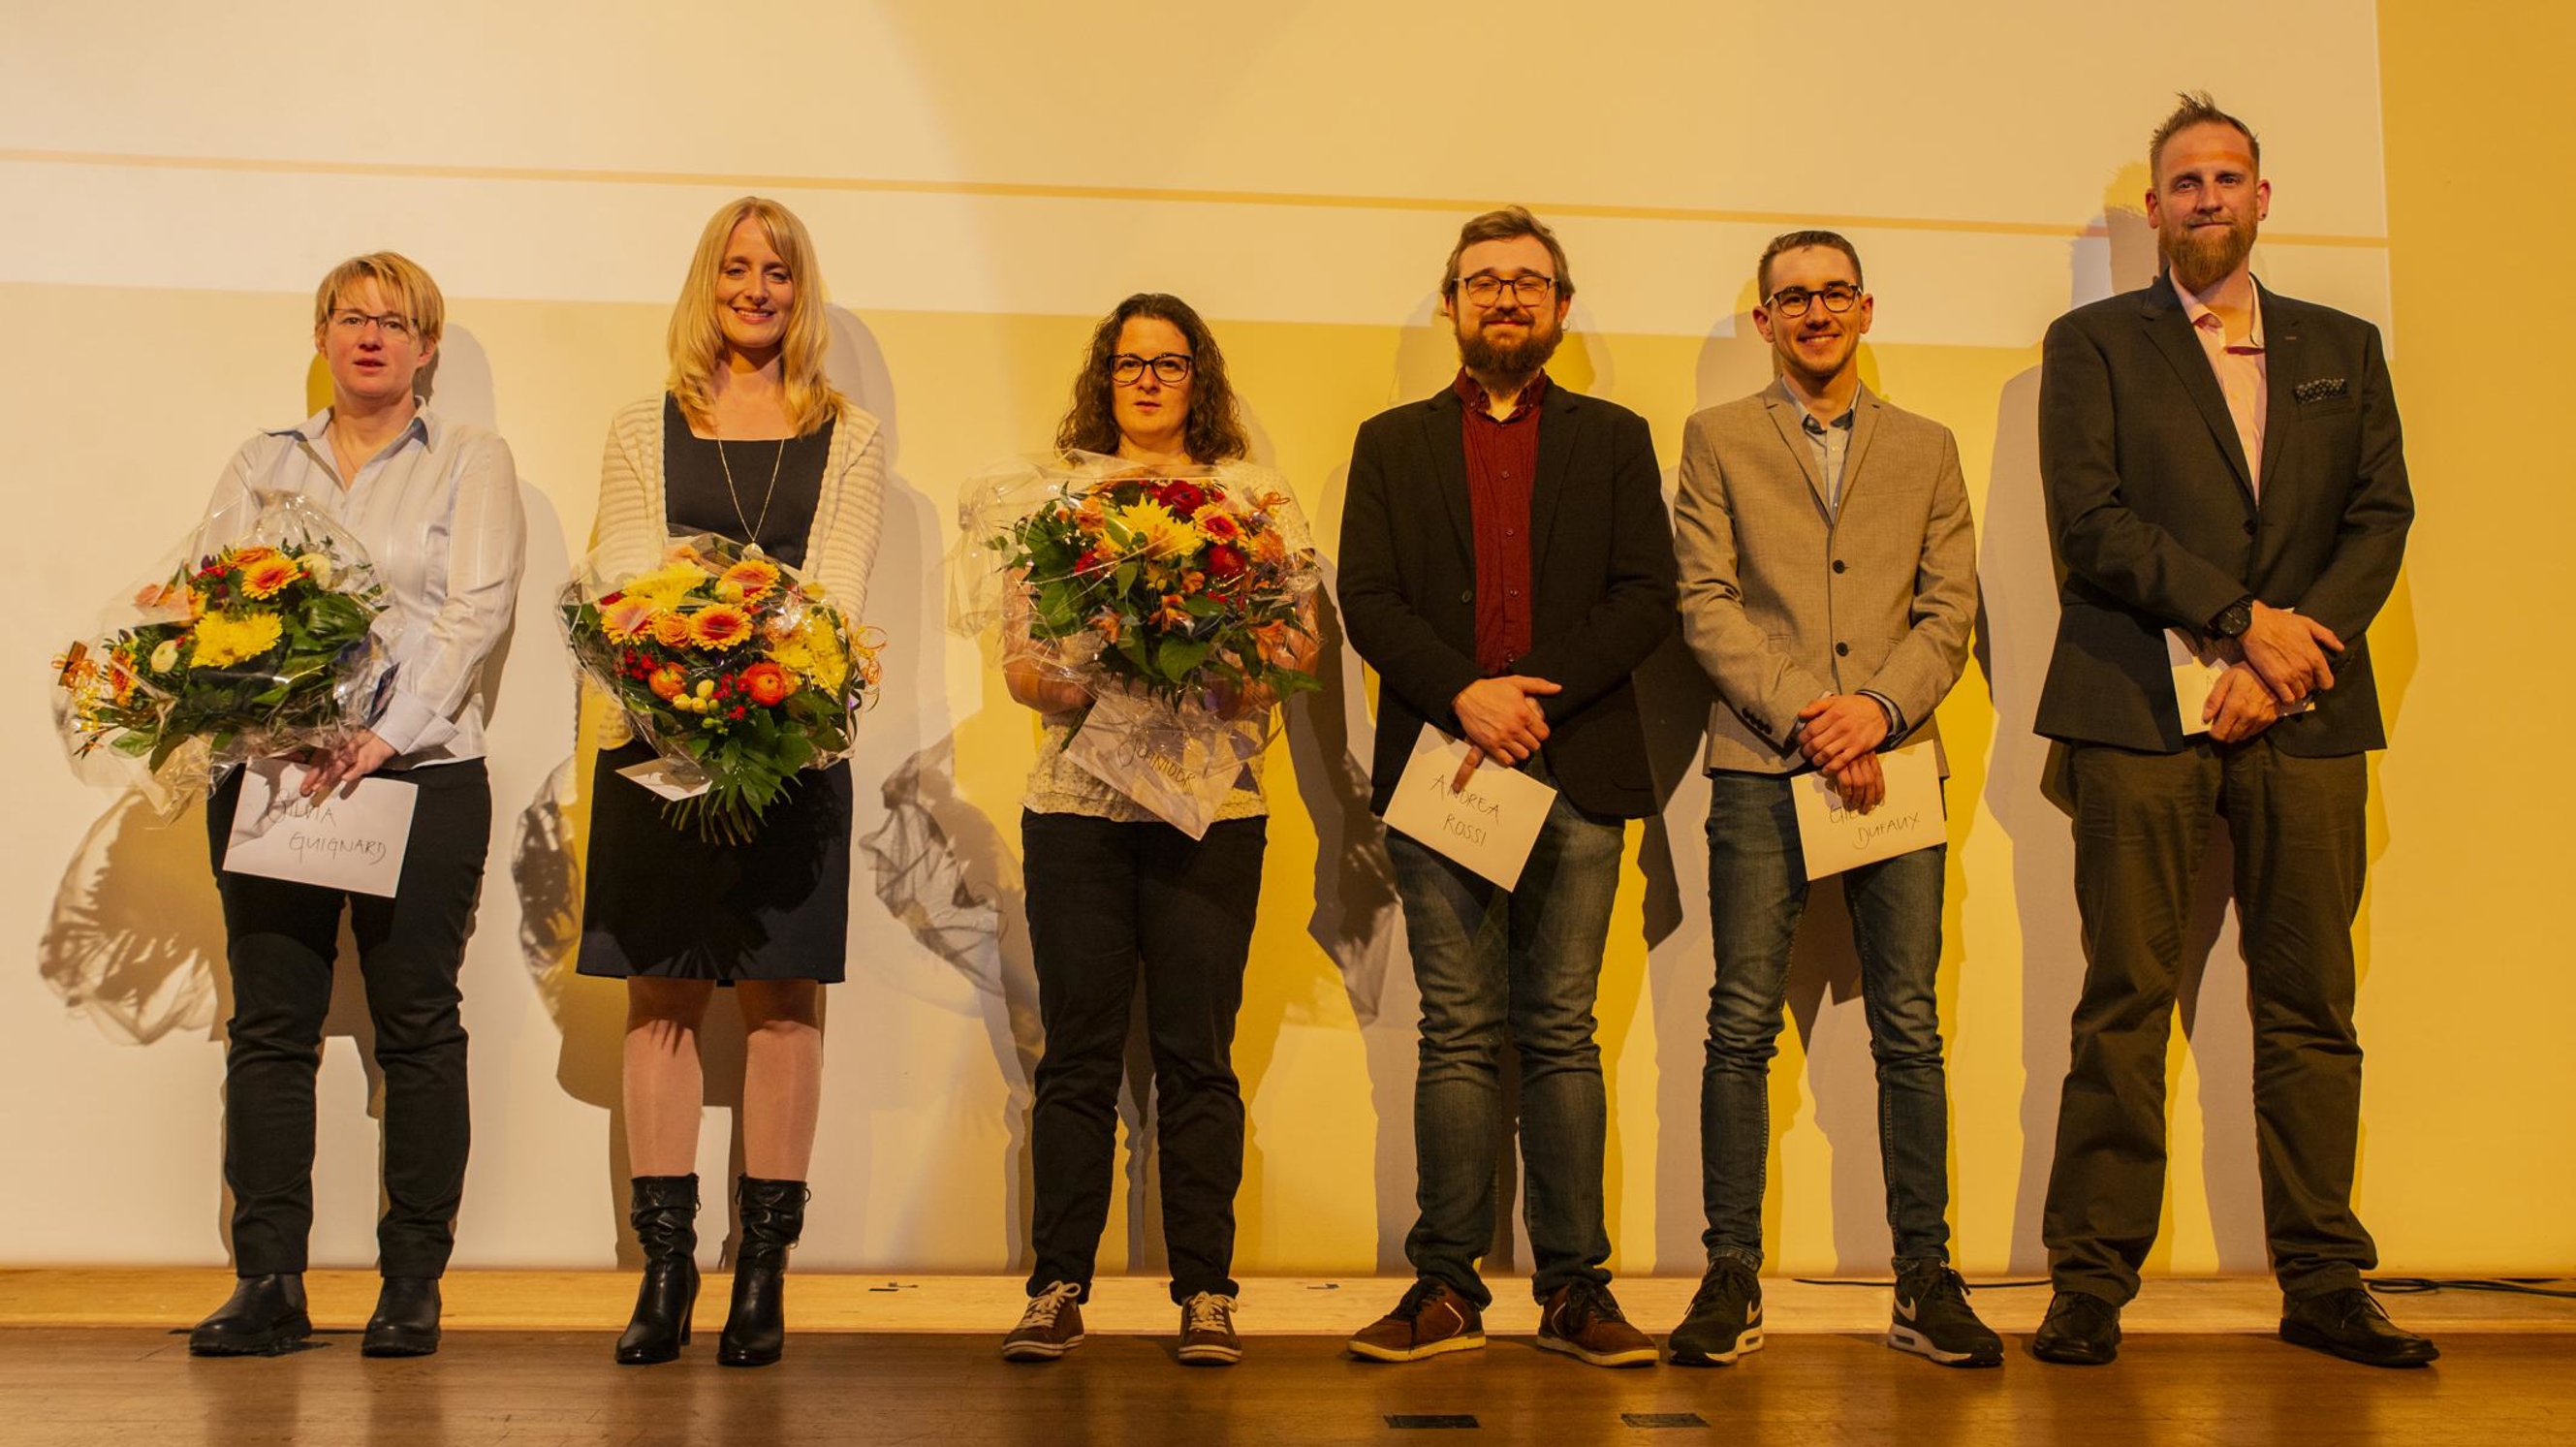 Sie wurden für ihre Leistungen ausgezeichnet (von links): Silvia Guignard, Irene Beyeler, Marina Schnider, Andrea Rossi, Gilles Dufaux und Marcel Ackermann.